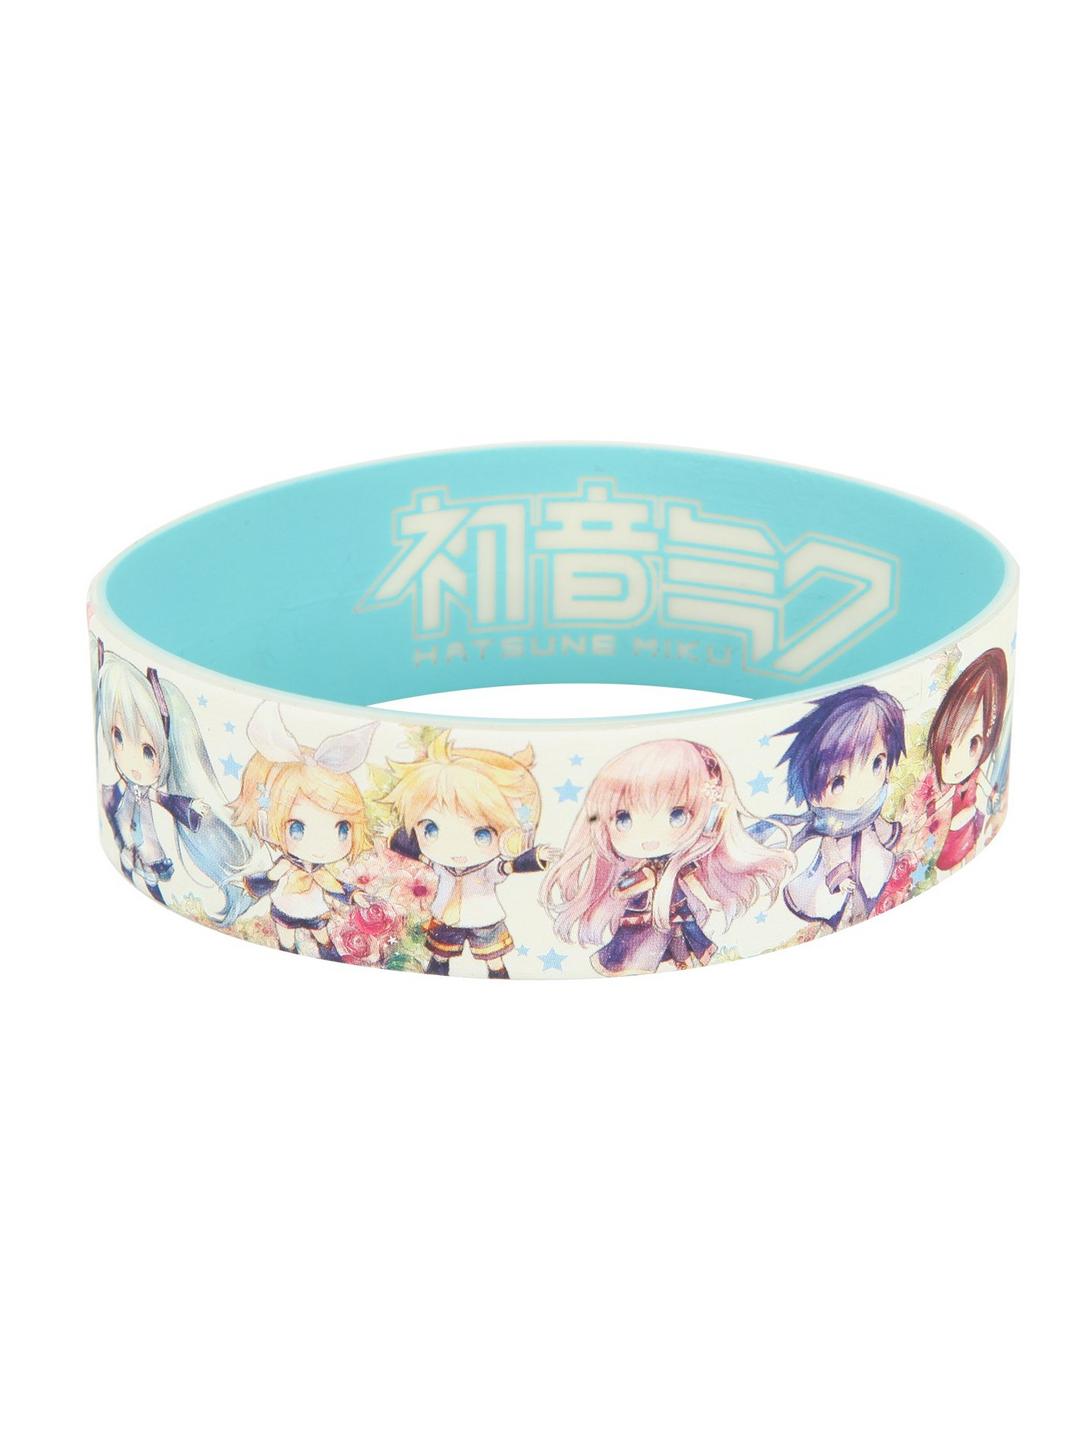 Hatsune Miku Chibi Rubber Bracelet, , hi-res